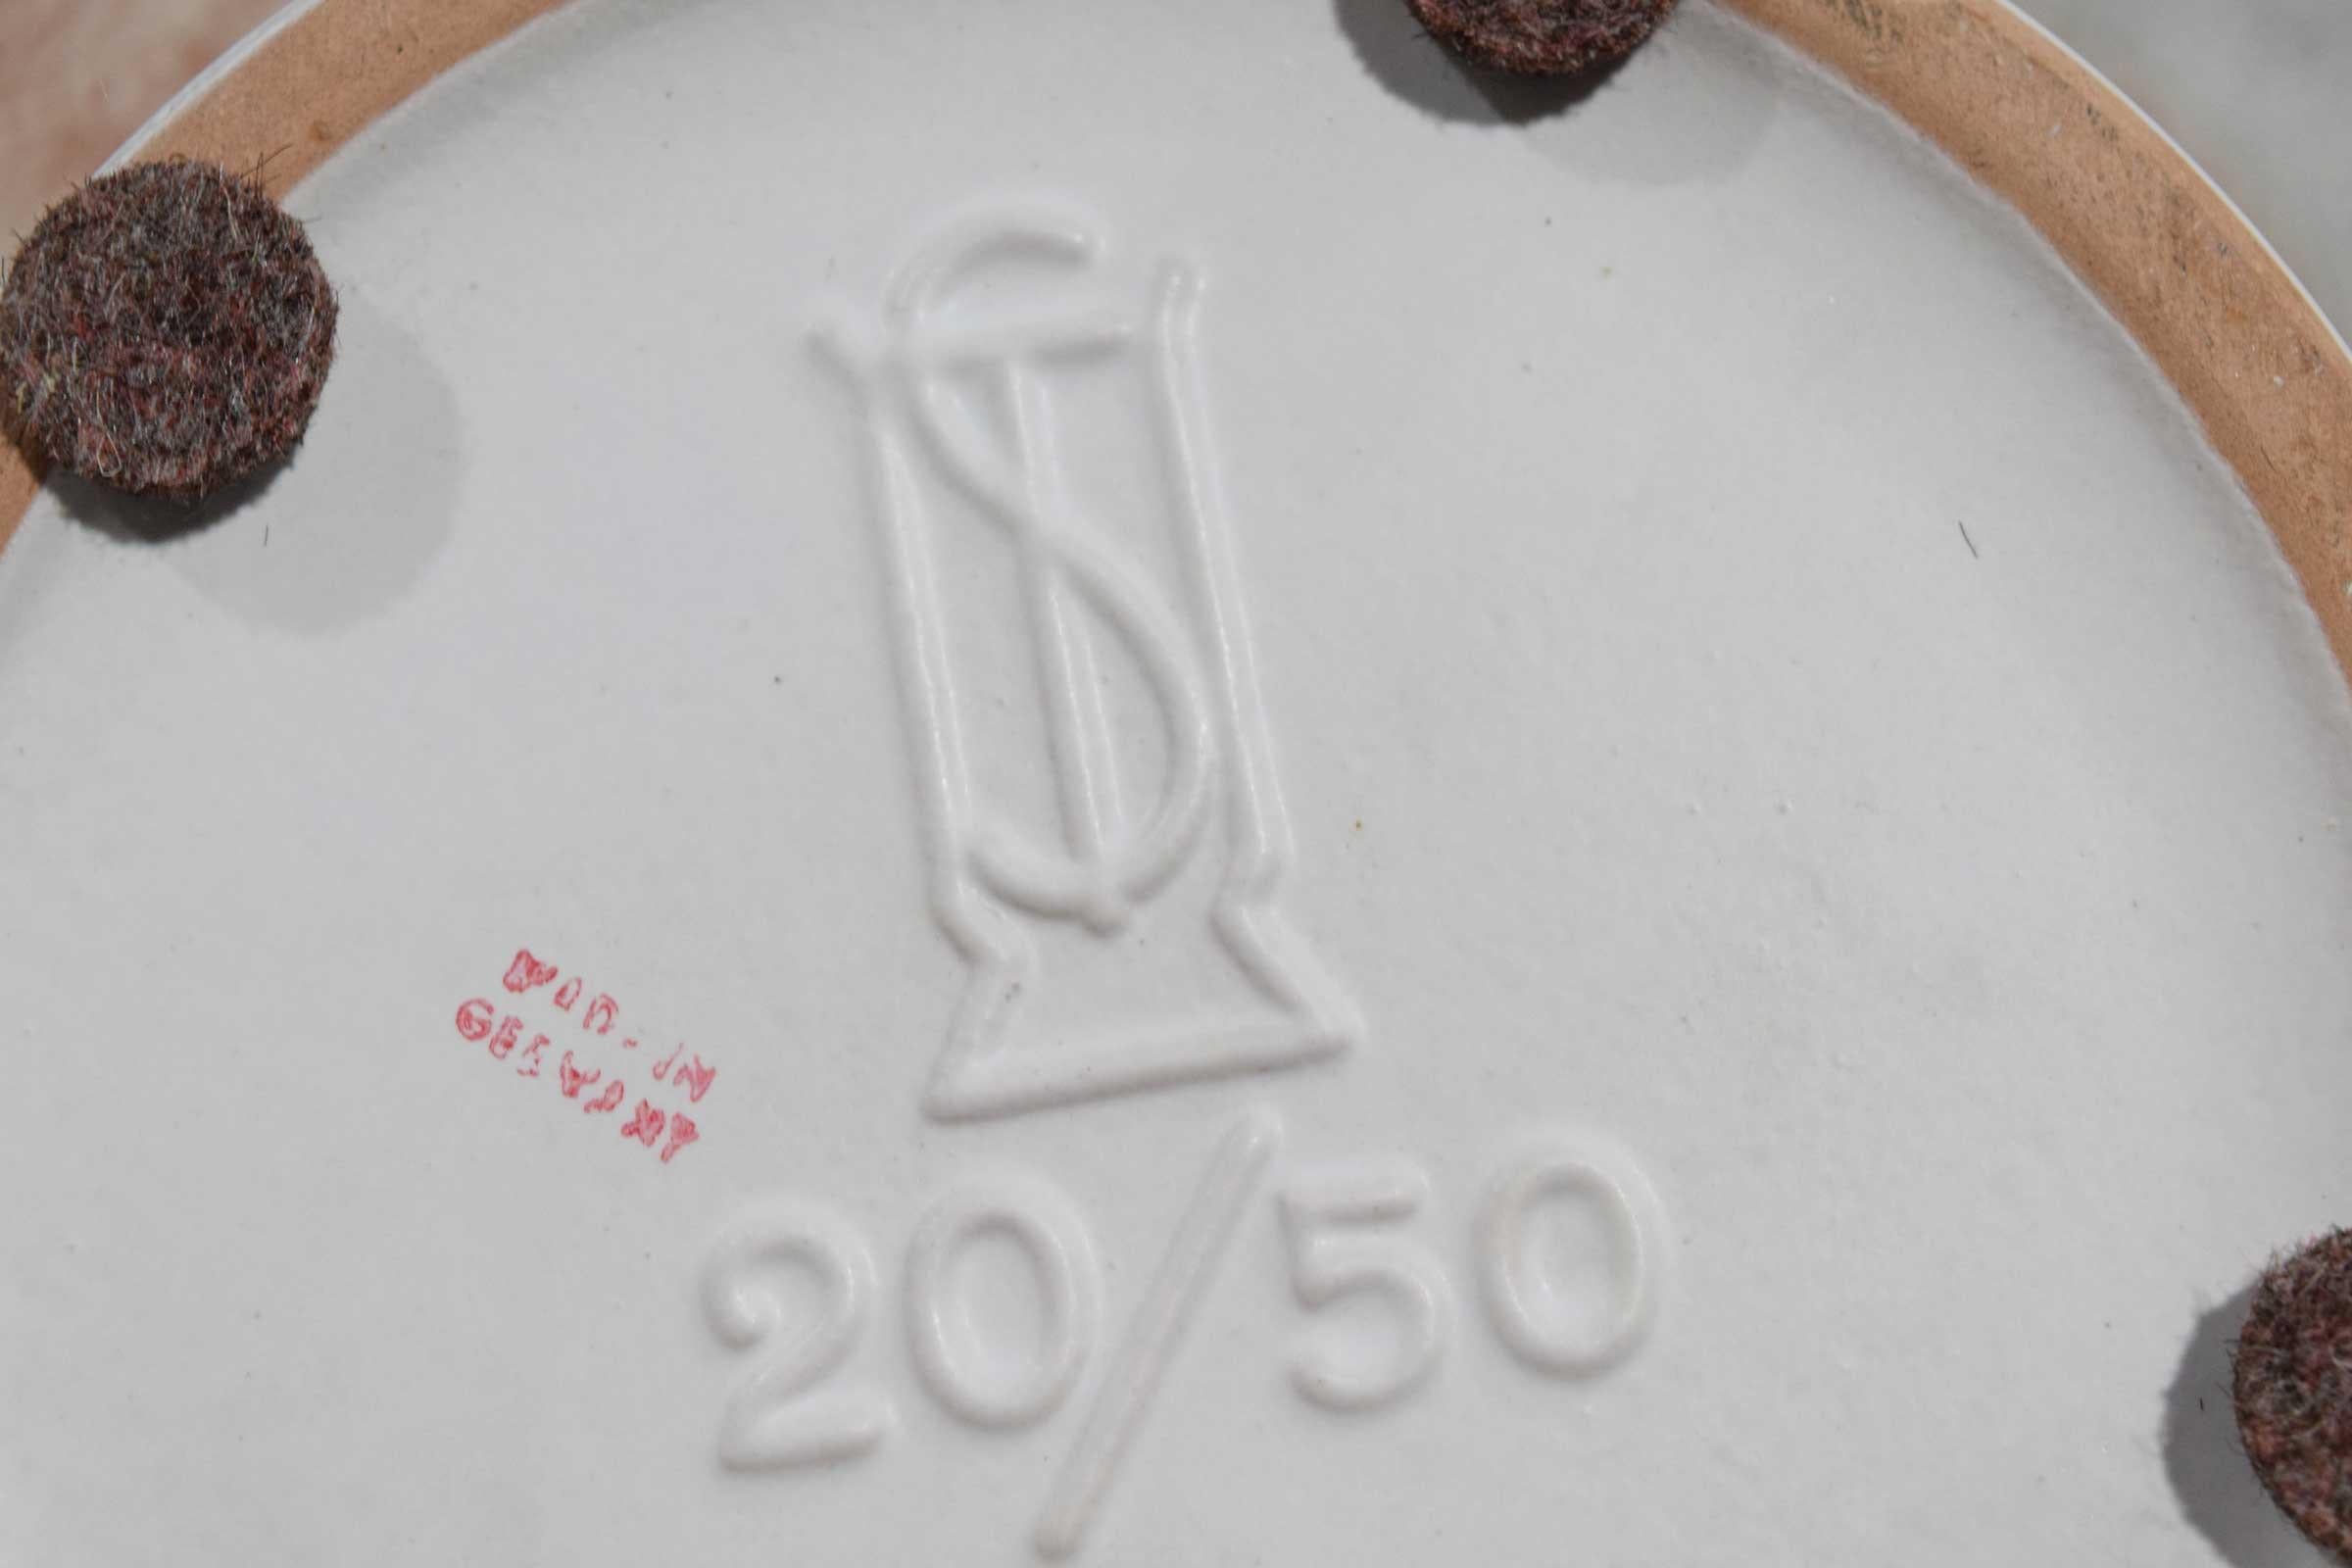 White ceramic with matte glaze.